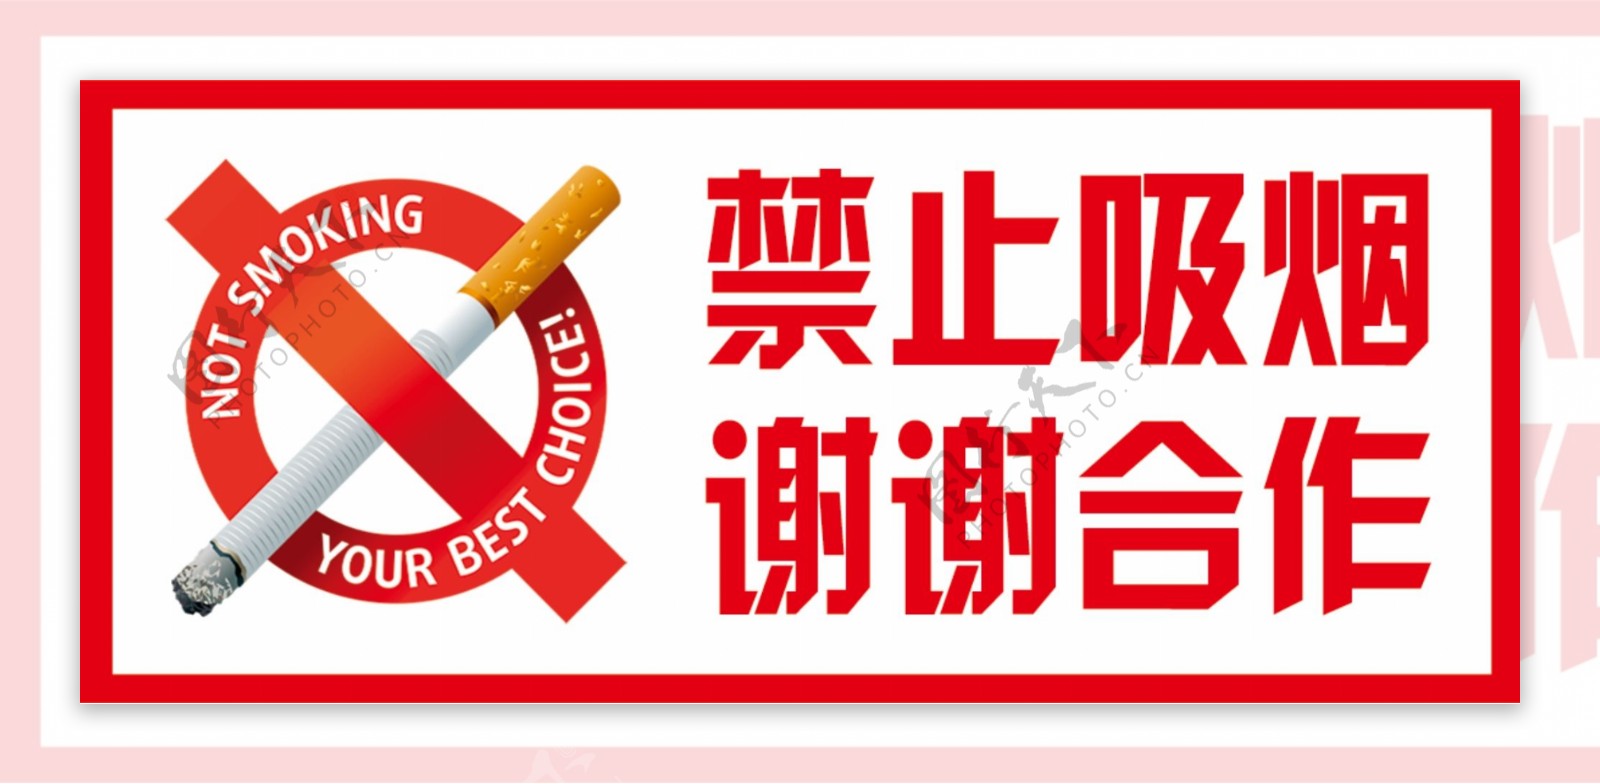 禁止吸烟谢谢合作